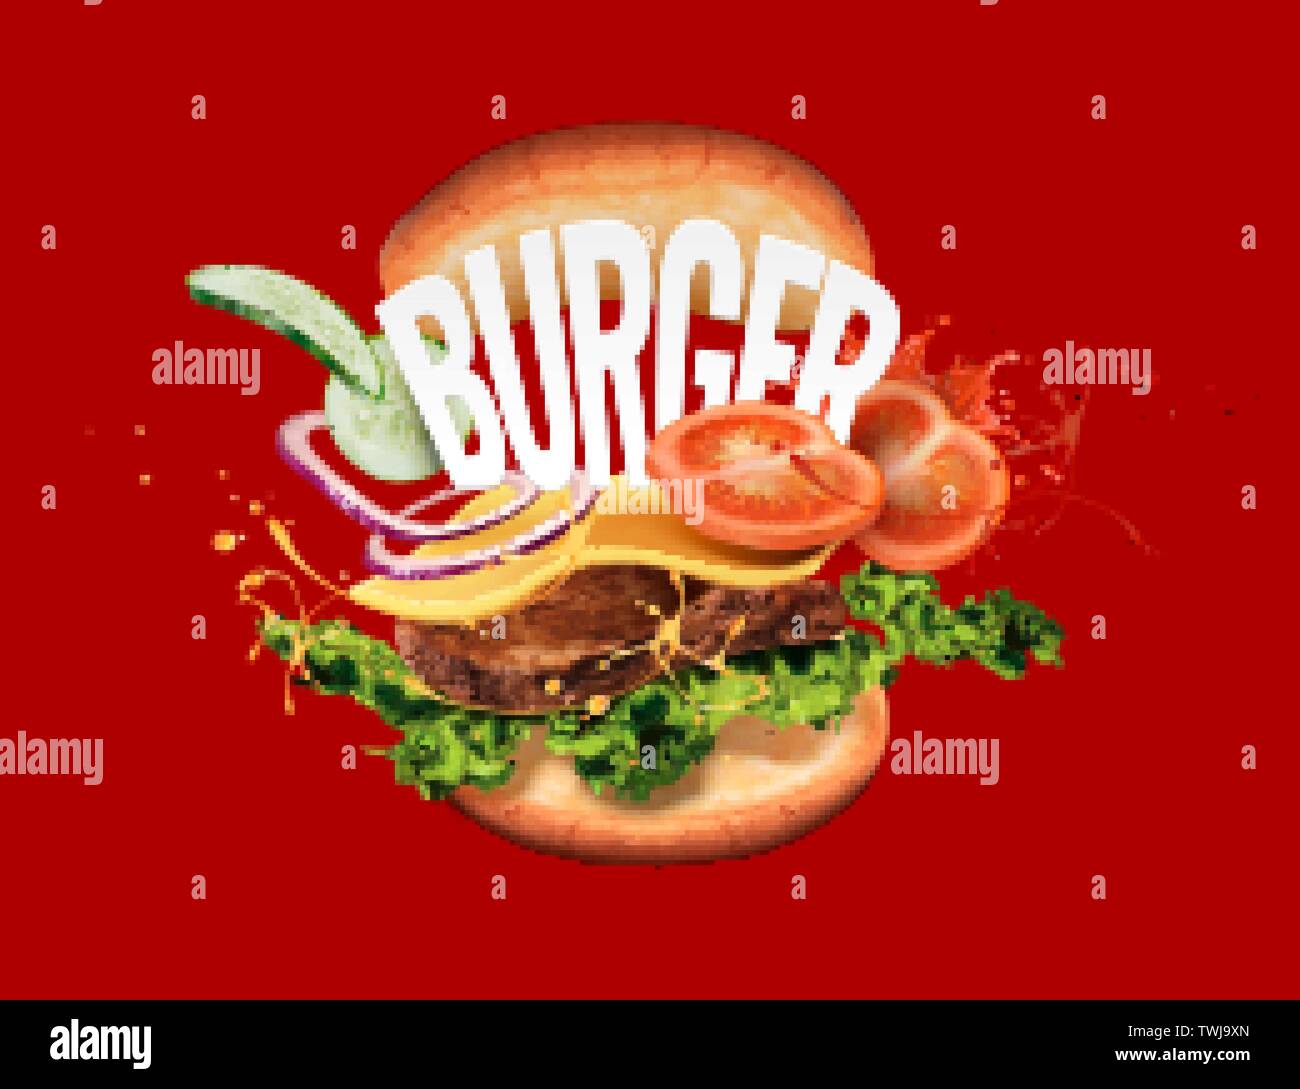 1,618 Plain Burger Images, Stock Photos, 3D objects, & Vectors